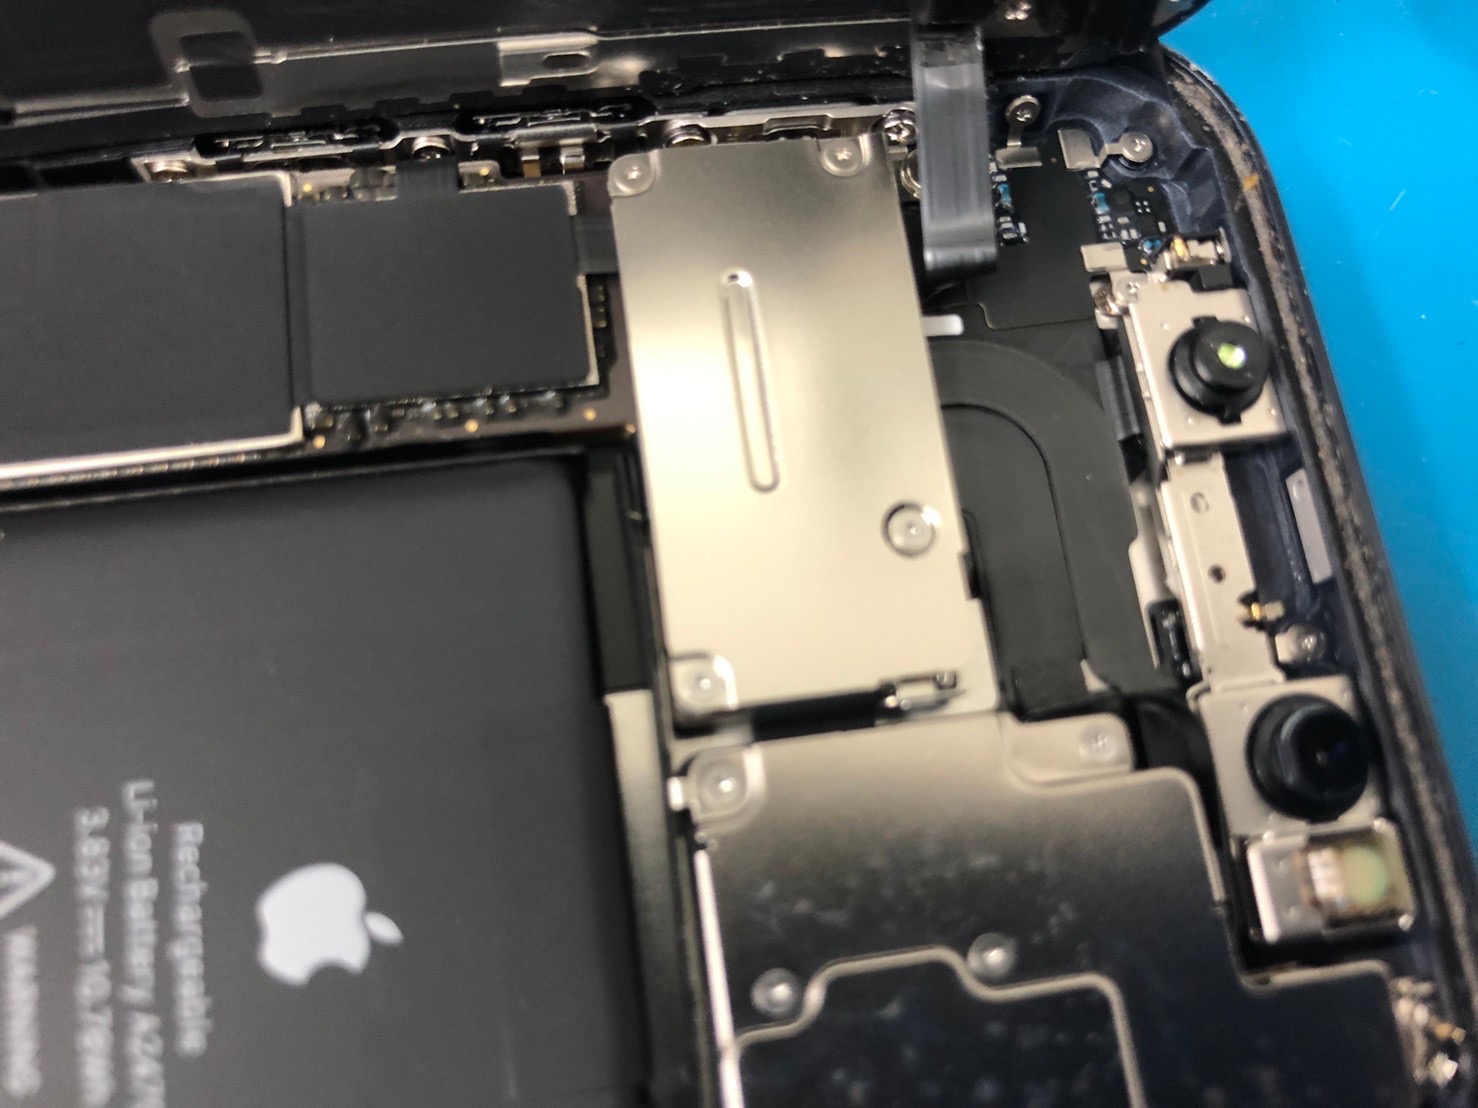 Iphoneサイレントスイッチは修理しなくても直るかも マナーモード故障の直し方iphone修理ジャパン秋葉原店スタッフブログ